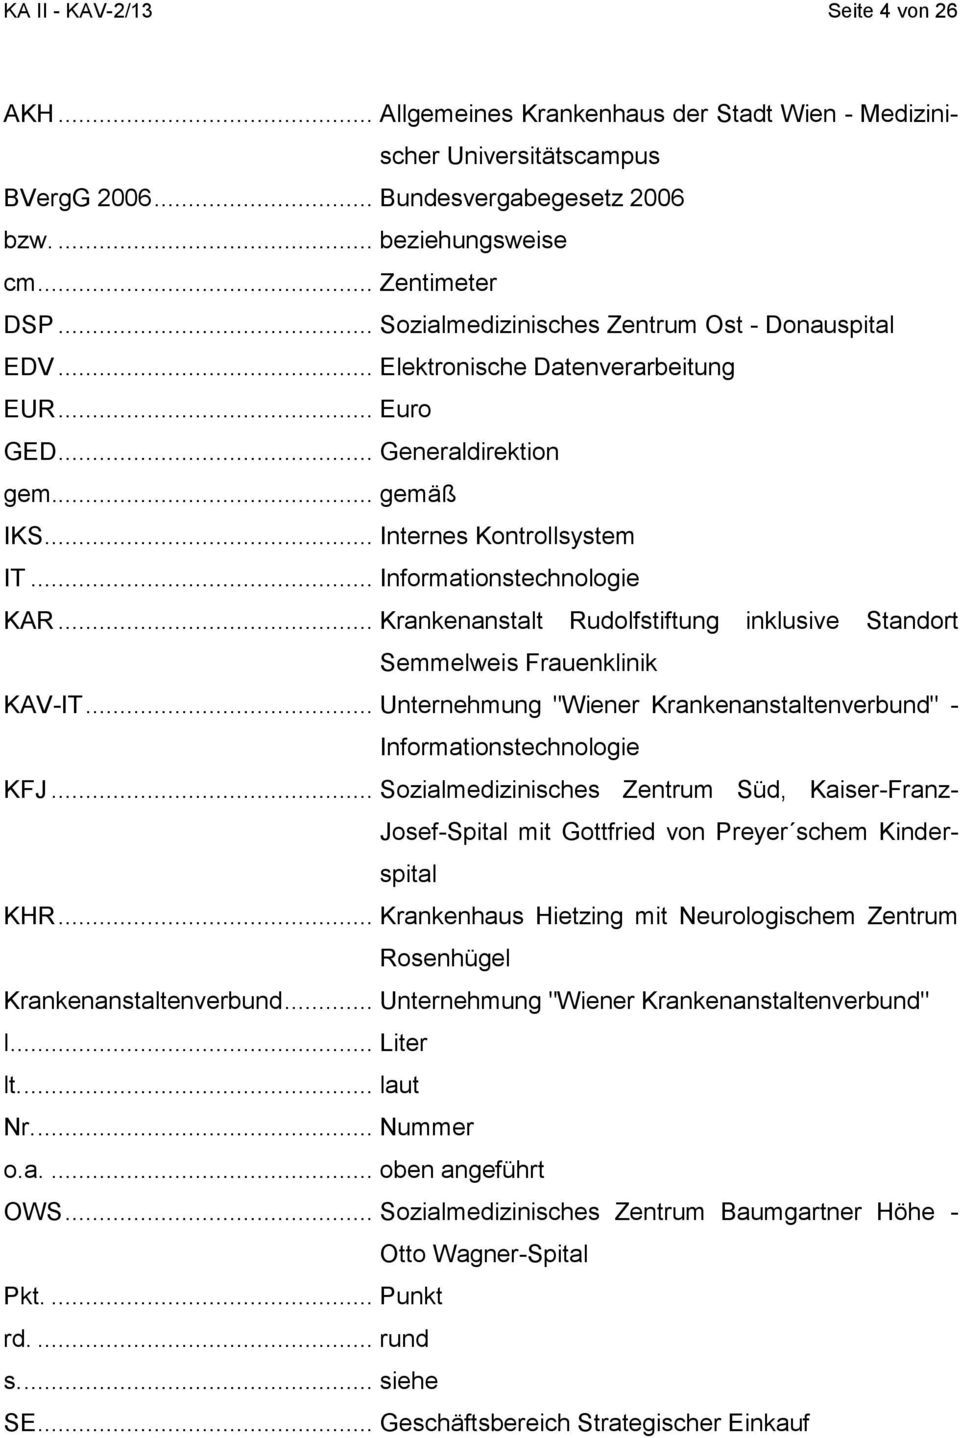 .. Krankenanstalt Rudolfstiftung inklusive Standort Semmelweis Frauenklinik KAV-IT... Unternehmung "Wiener Krankenanstaltenverbund" - Informationstechnologie KFJ.